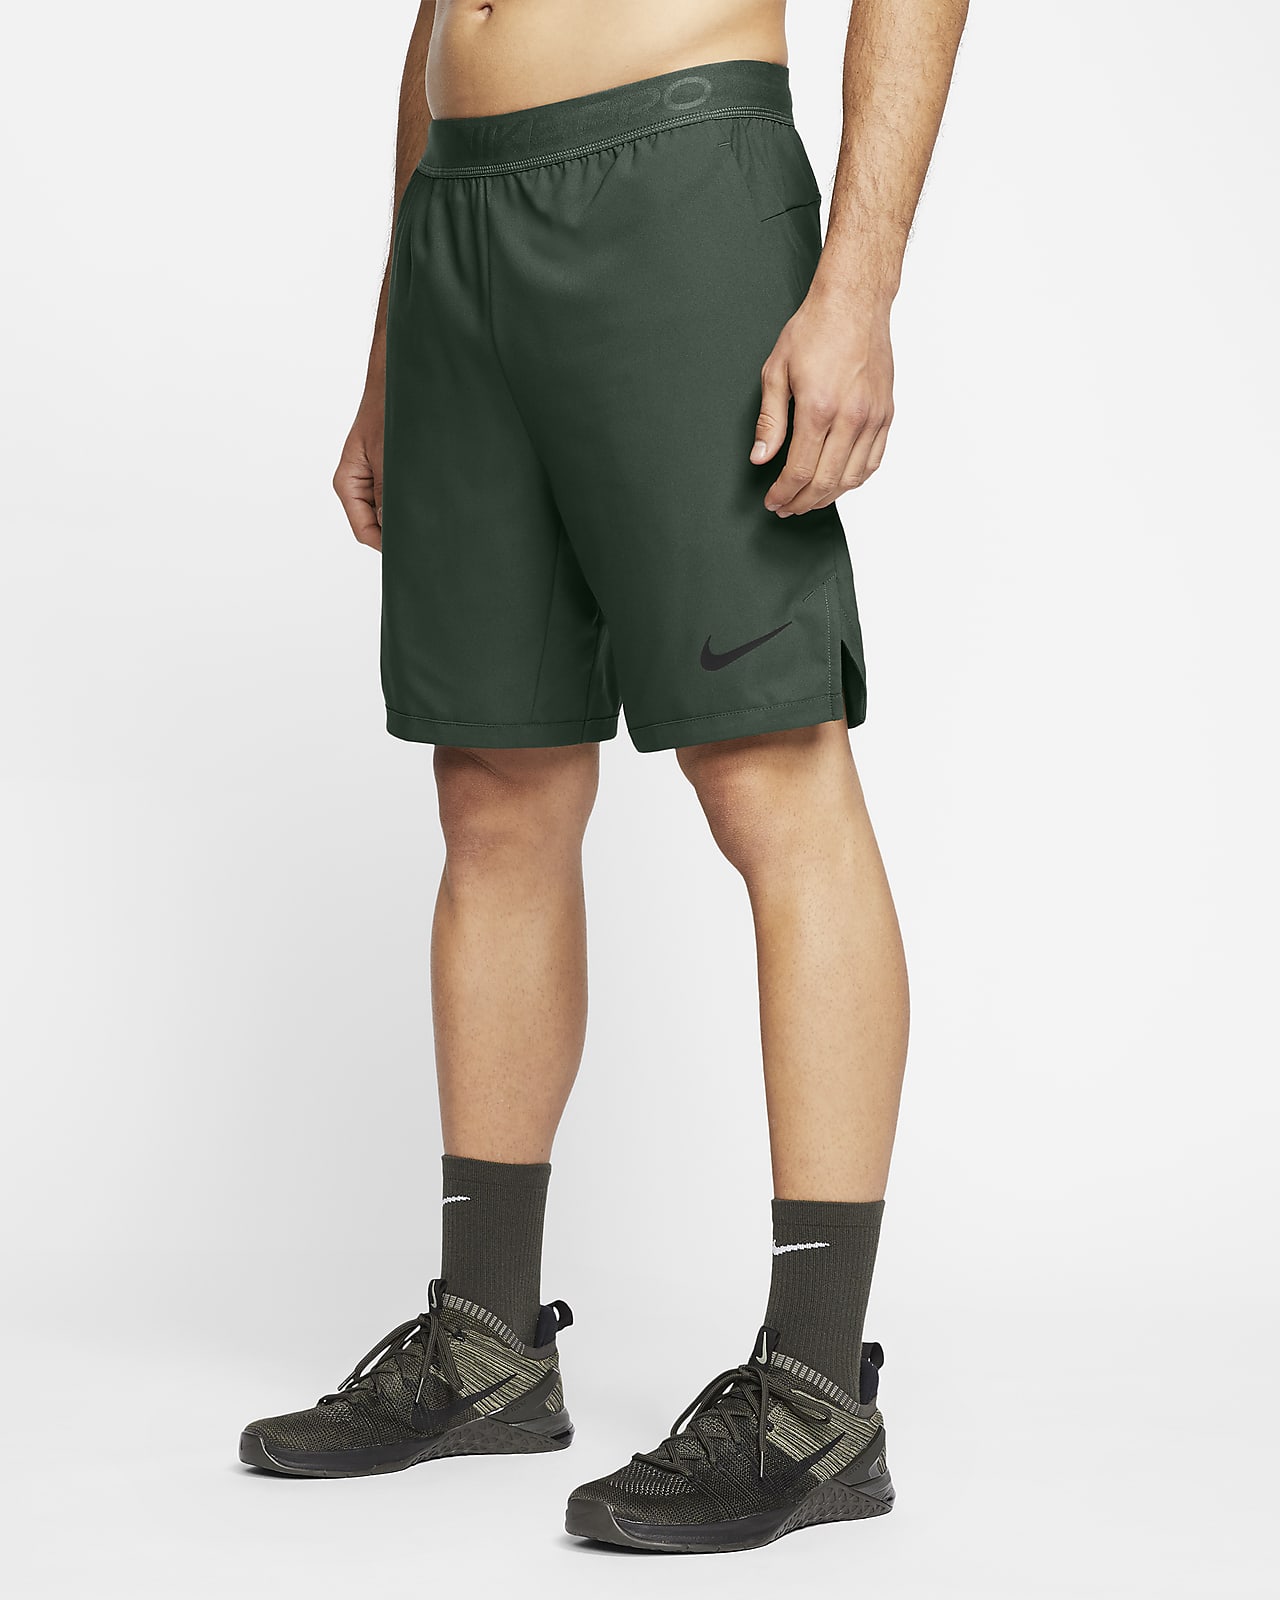 Shorts para hombre Nike Pro Flex Vent Max. Nike.com